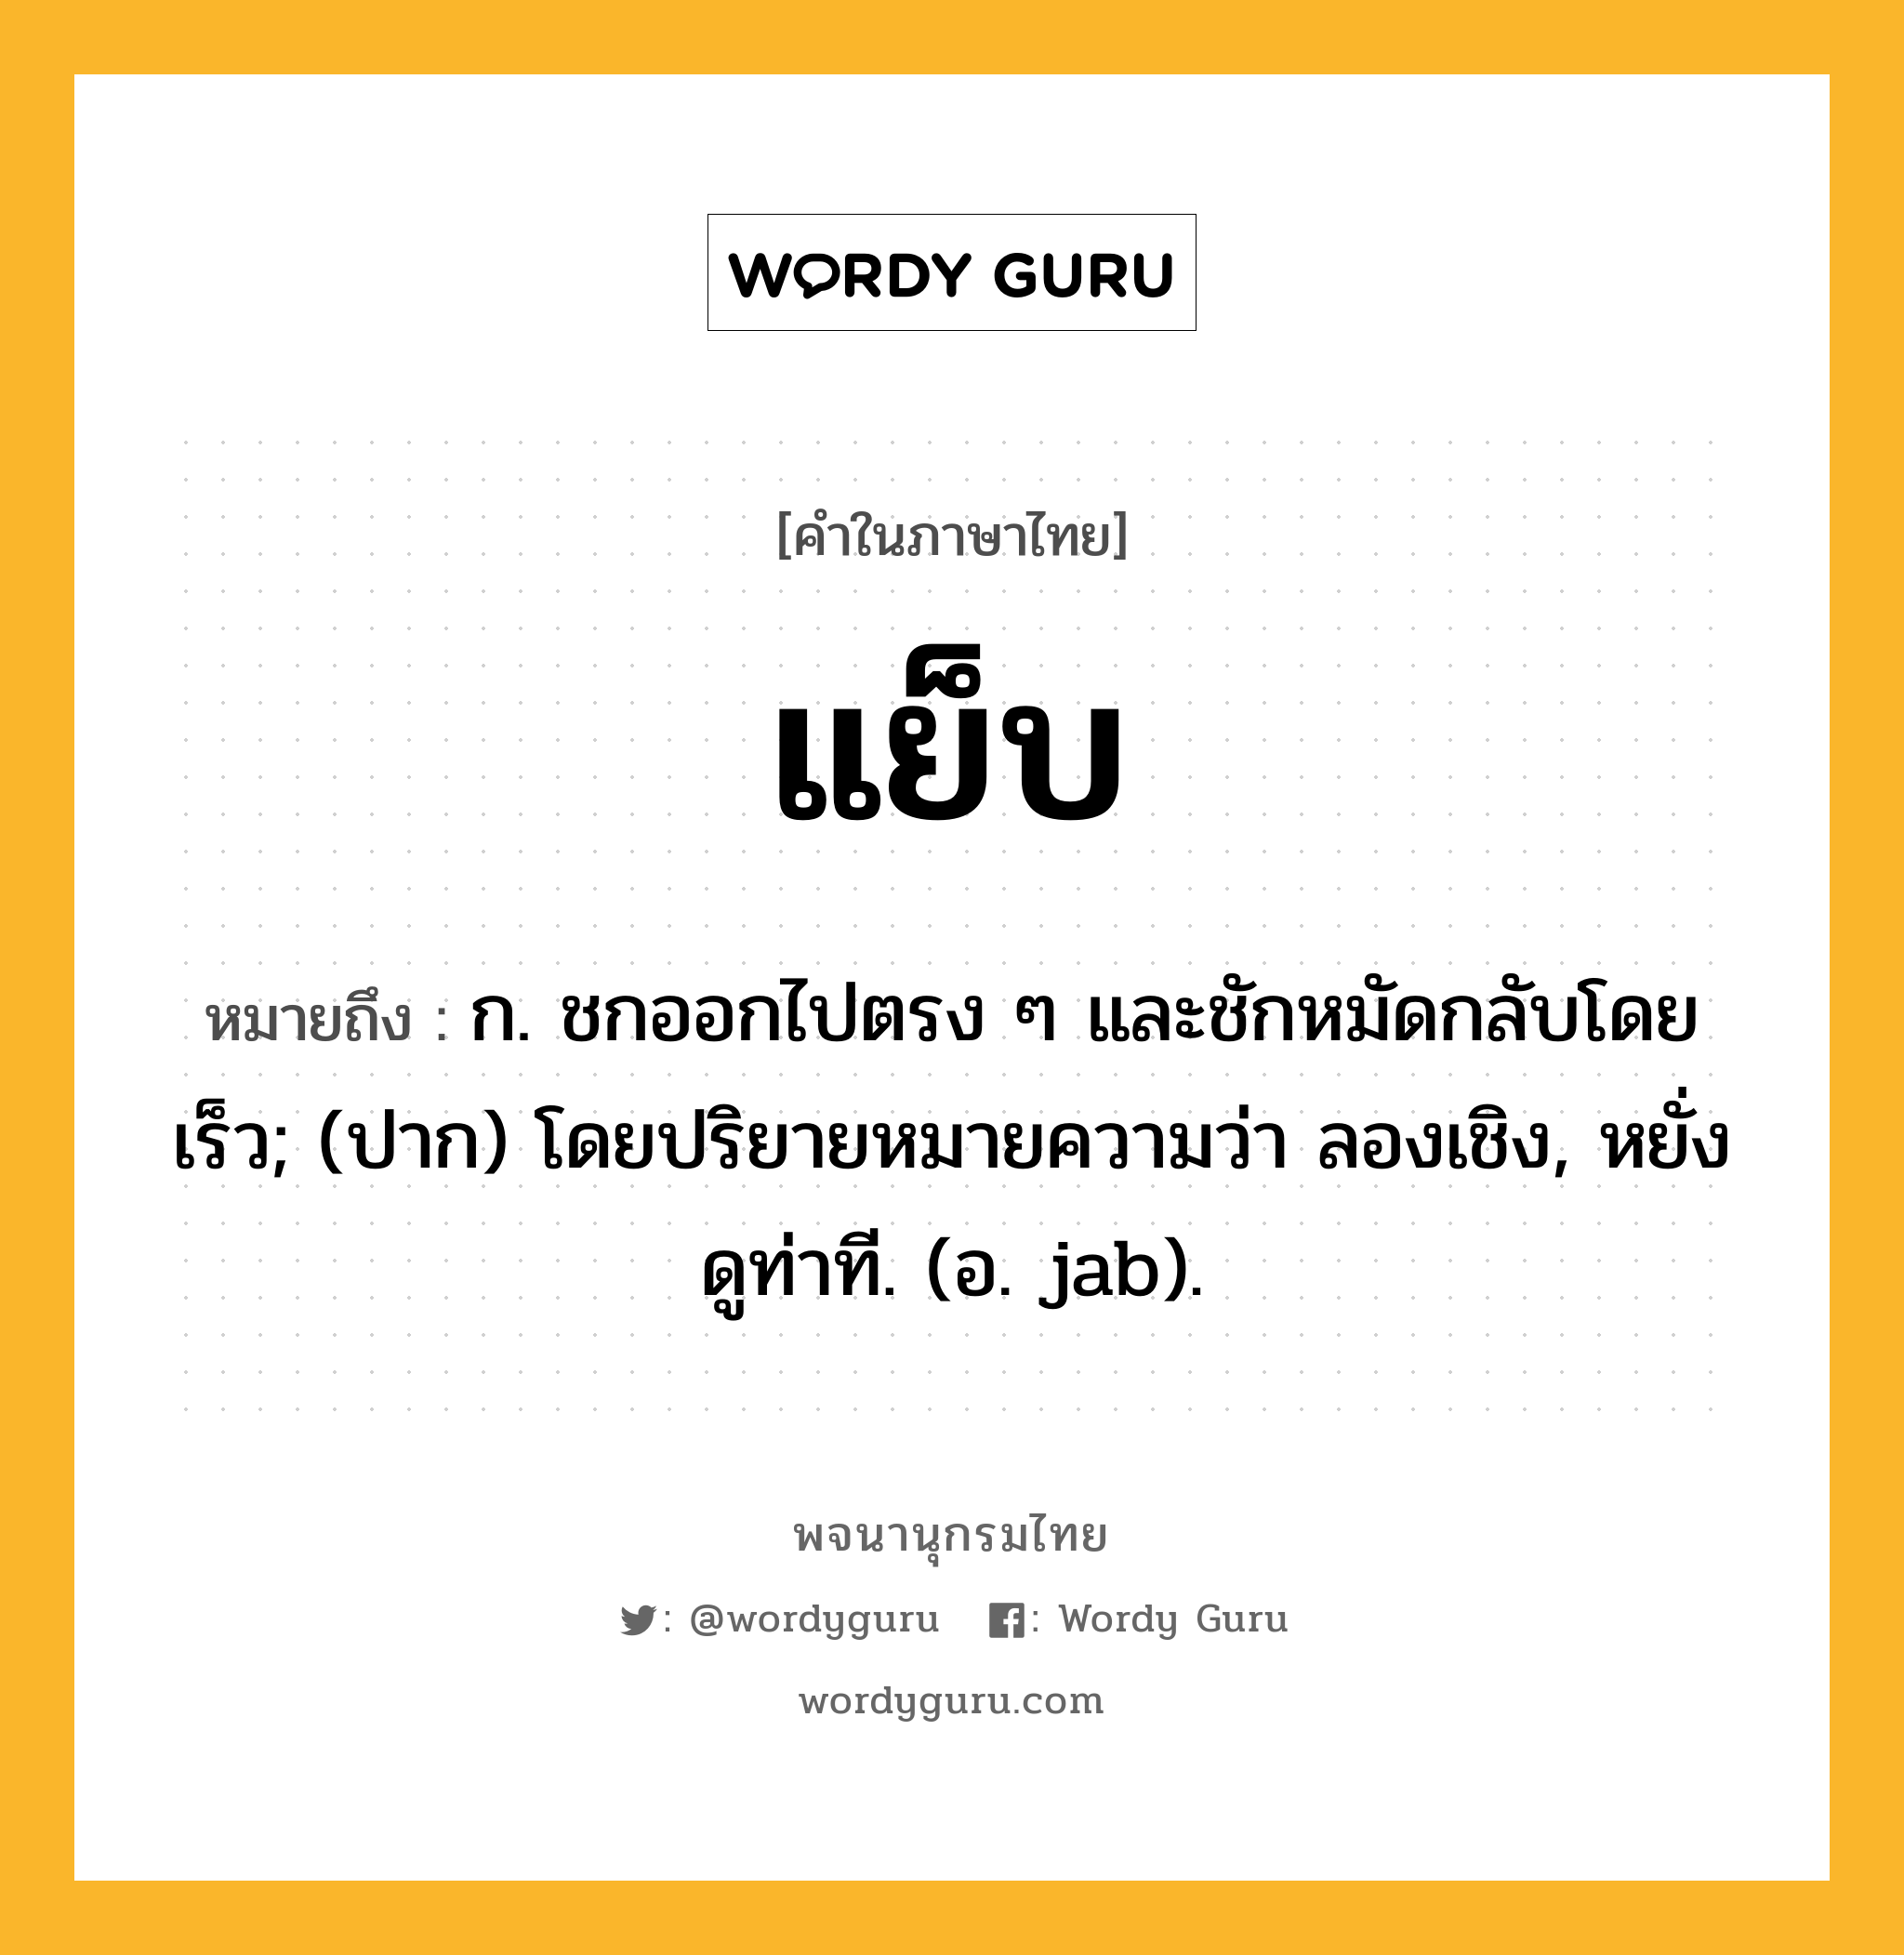 แย็บ ความหมาย หมายถึงอะไร?, คำในภาษาไทย แย็บ หมายถึง ก. ชกออกไปตรง ๆ และชักหมัดกลับโดยเร็ว; (ปาก) โดยปริยายหมายความว่า ลองเชิง, หยั่งดูท่าที. (อ. jab).